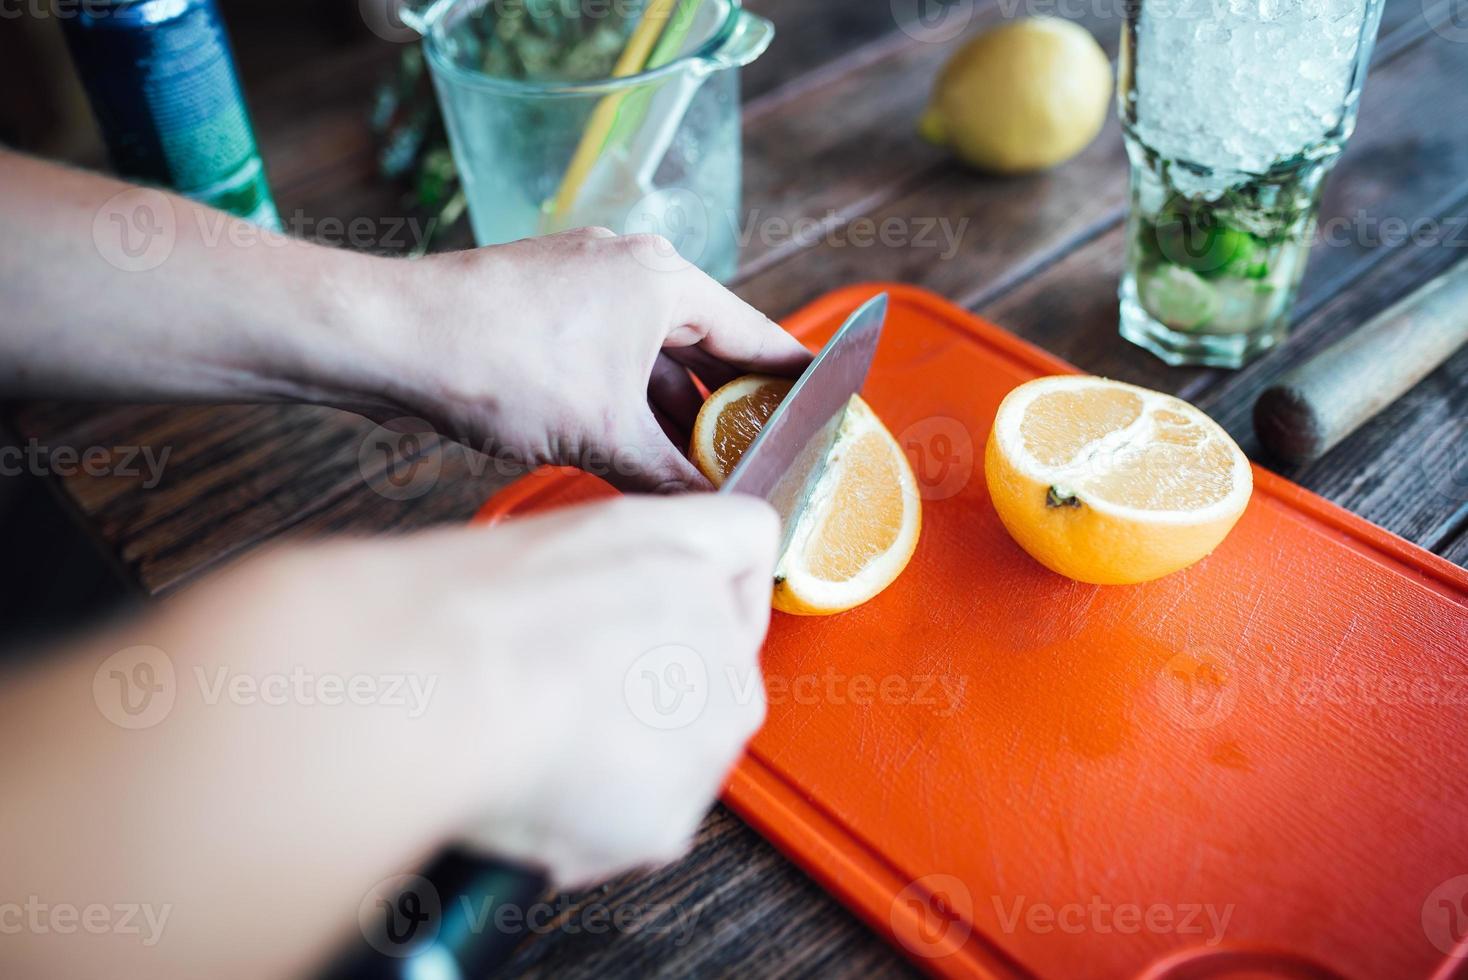 le barman prépare un cocktail d'alcool de fruits à base de citron vert, menthe, orange, soda photo